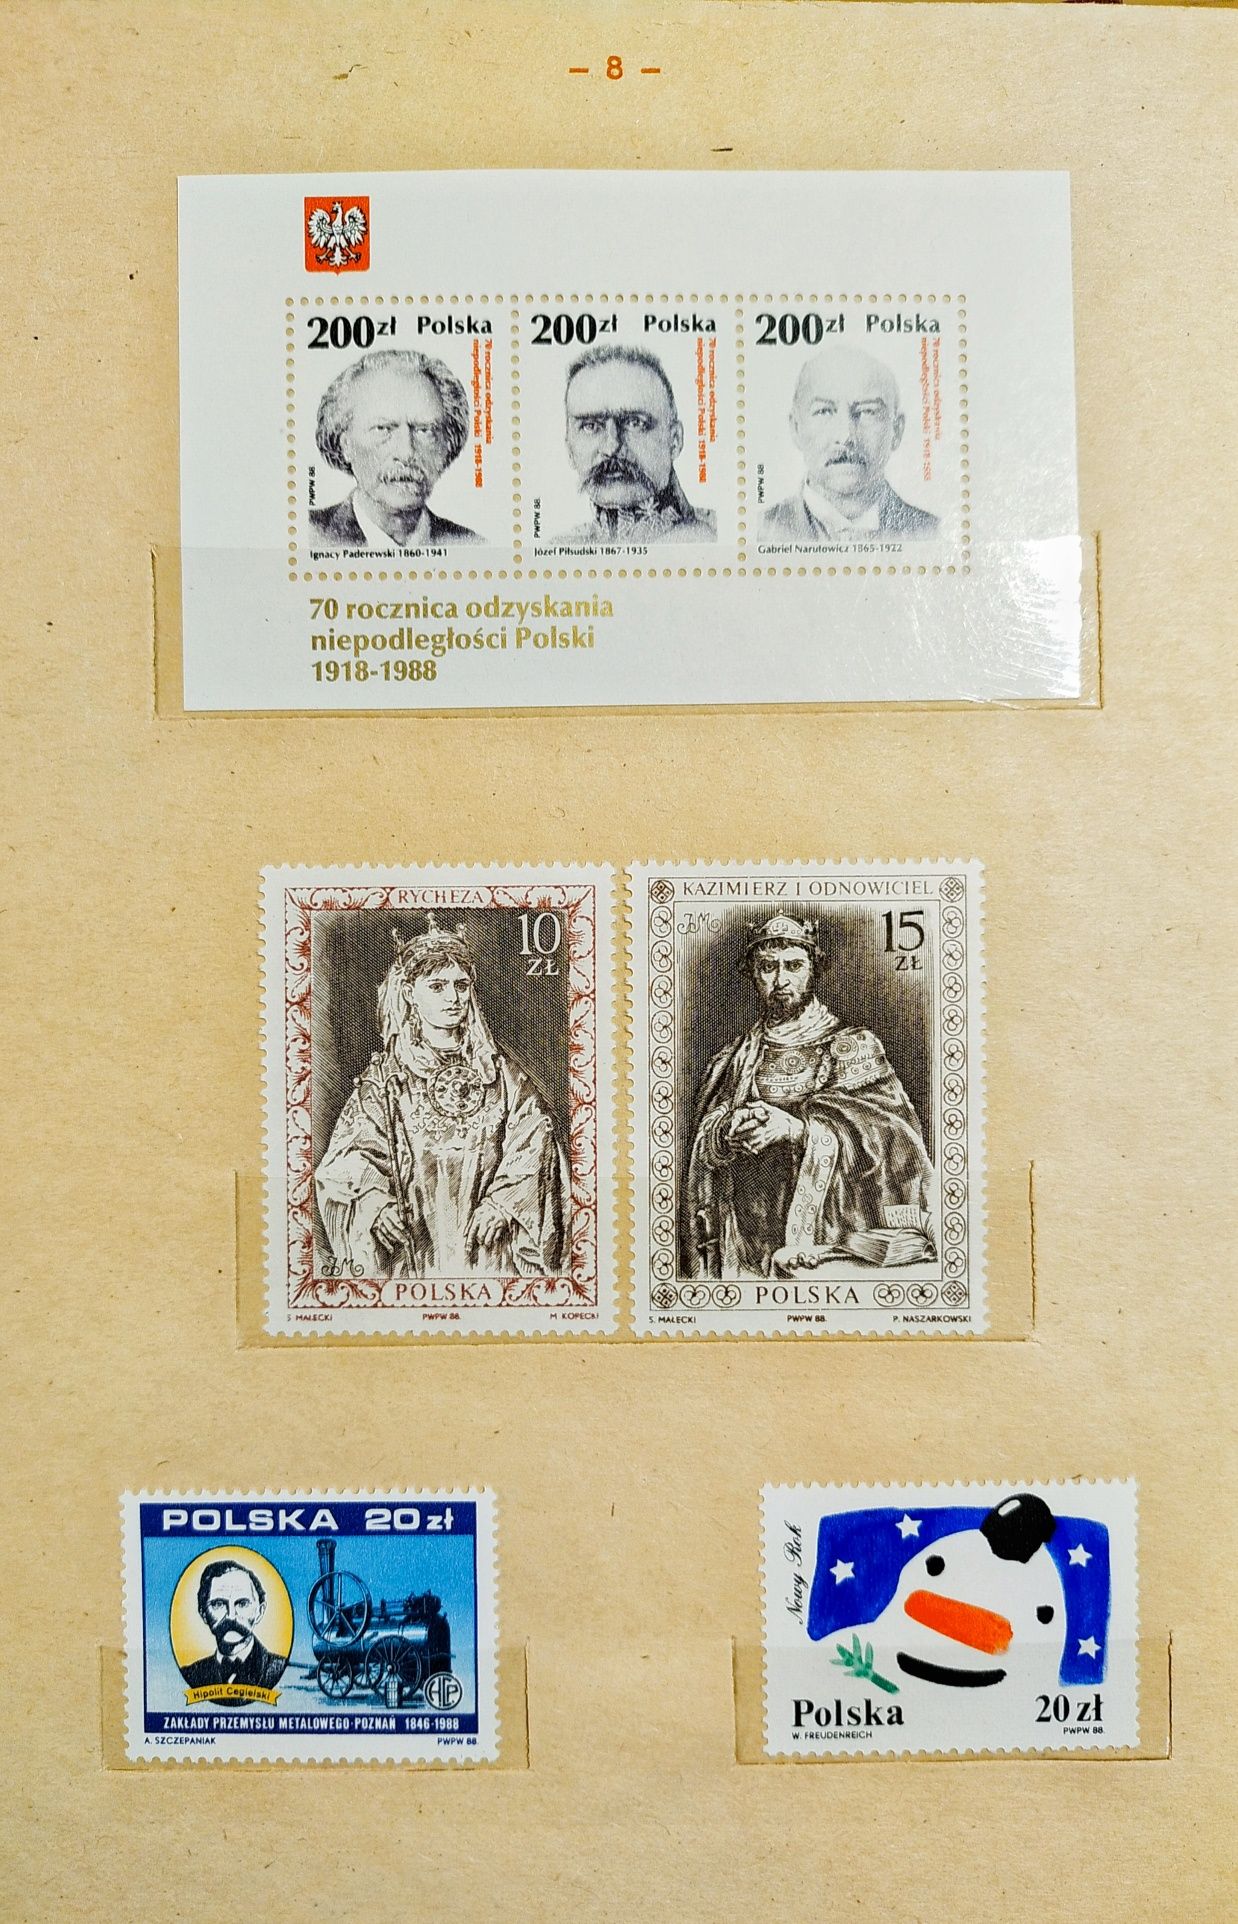 Klaser jubileuszowy ze znaczkami czystymi tom XVII Polska 88-89